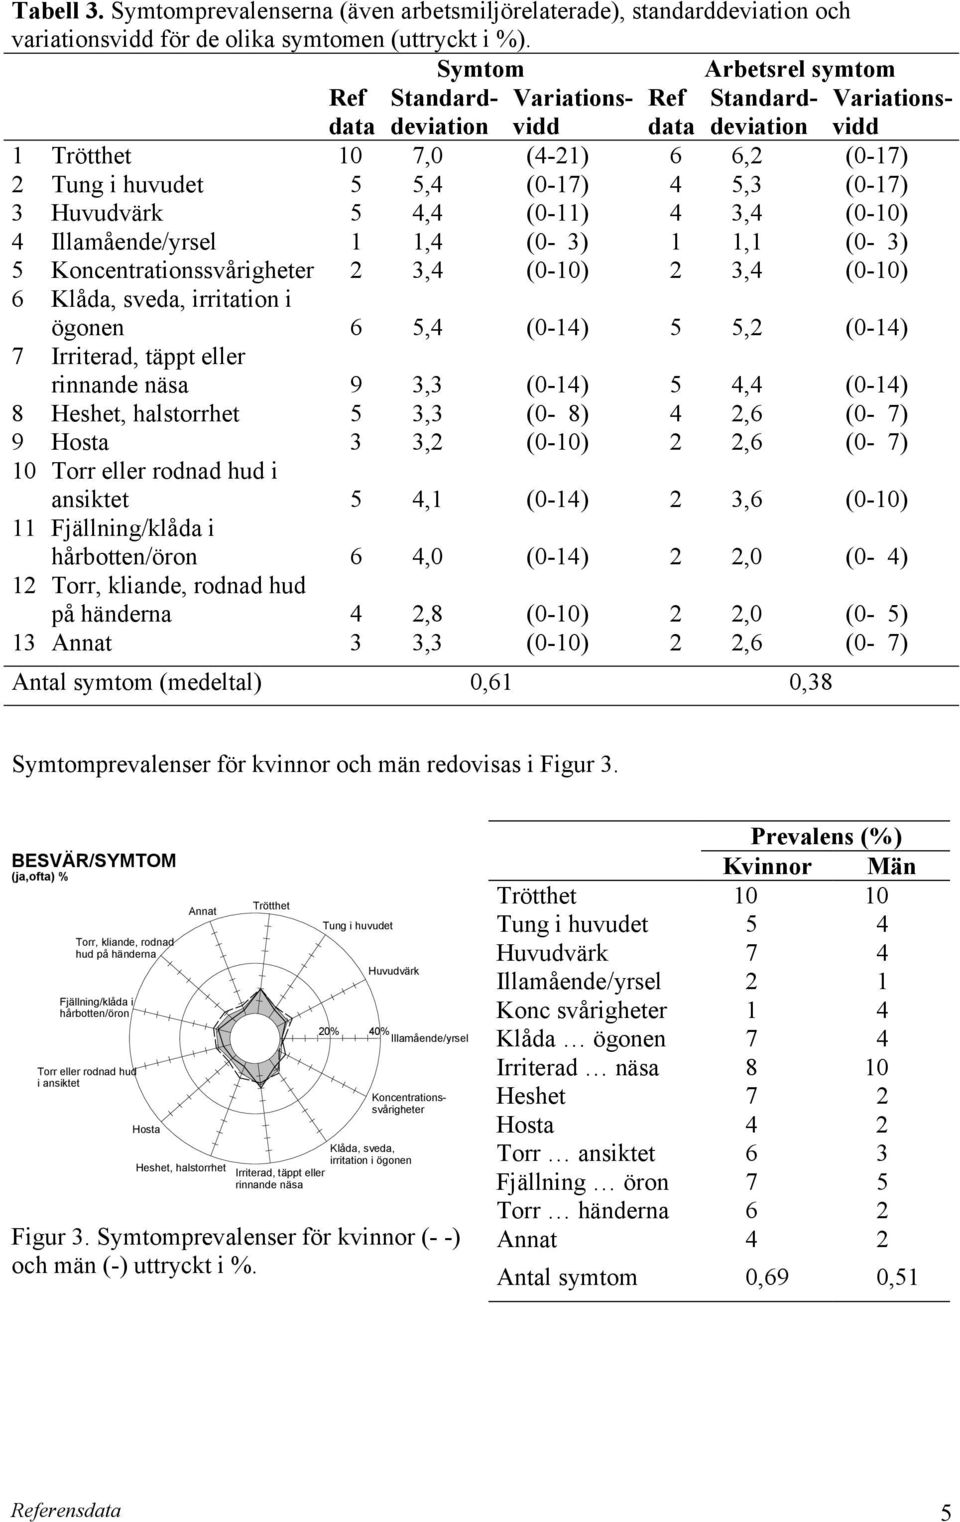 Illamående/yrsel Figur 3. Symtomprevalenser för kvinnor (- -) och män (-) uttryckt i %. 20% Huvudvärk Tabell 3.